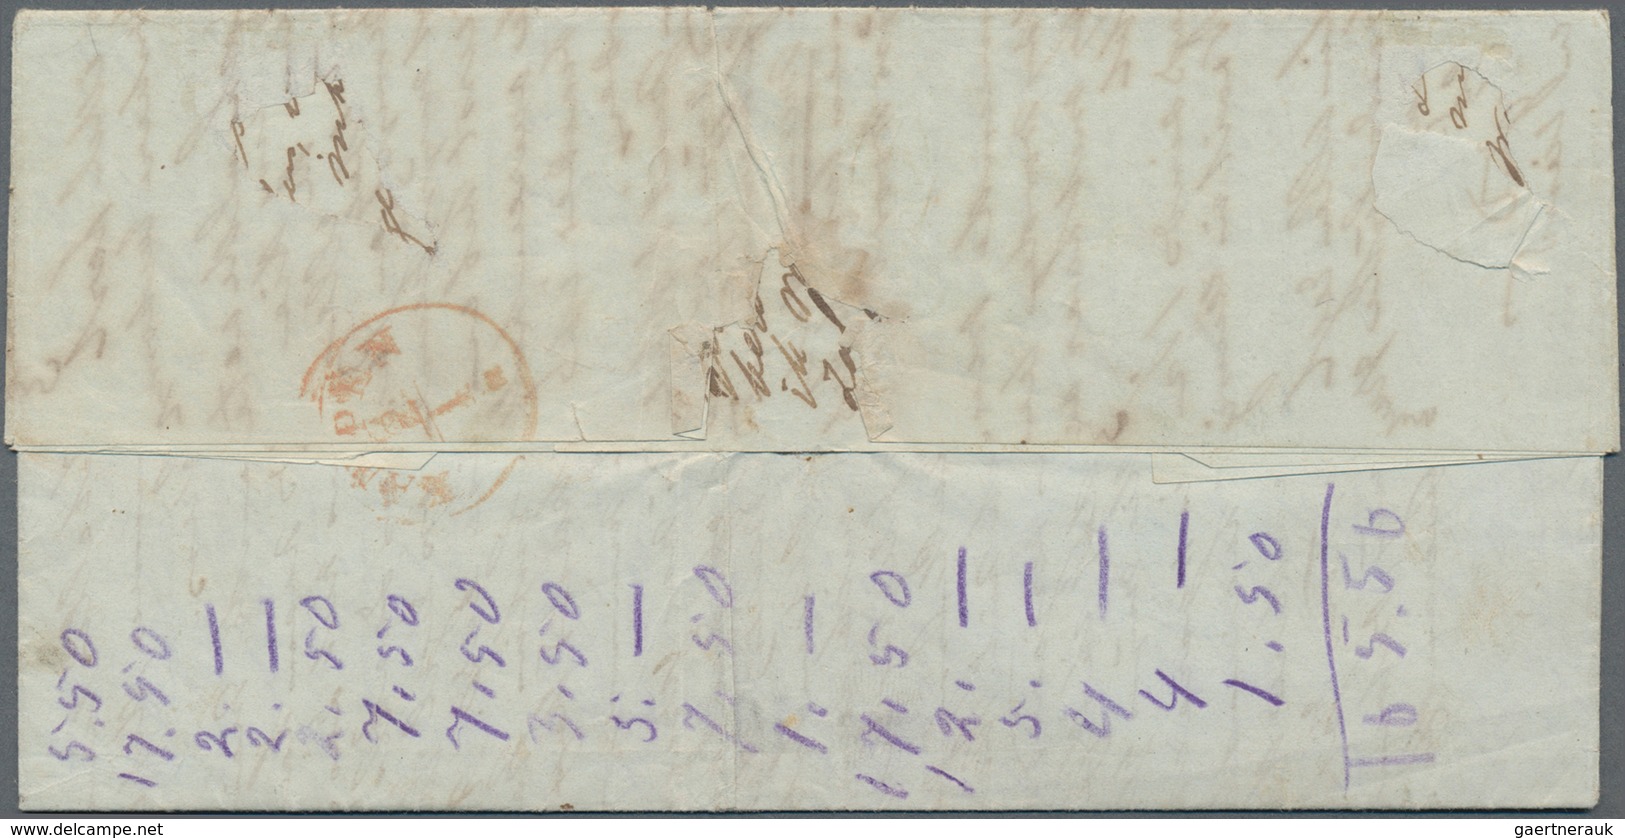 Niederländisch-Indien: 1855 Entire Letter Sent From Ambarawa To Kampen, Netherlands And Dated (insid - Niederländisch-Indien